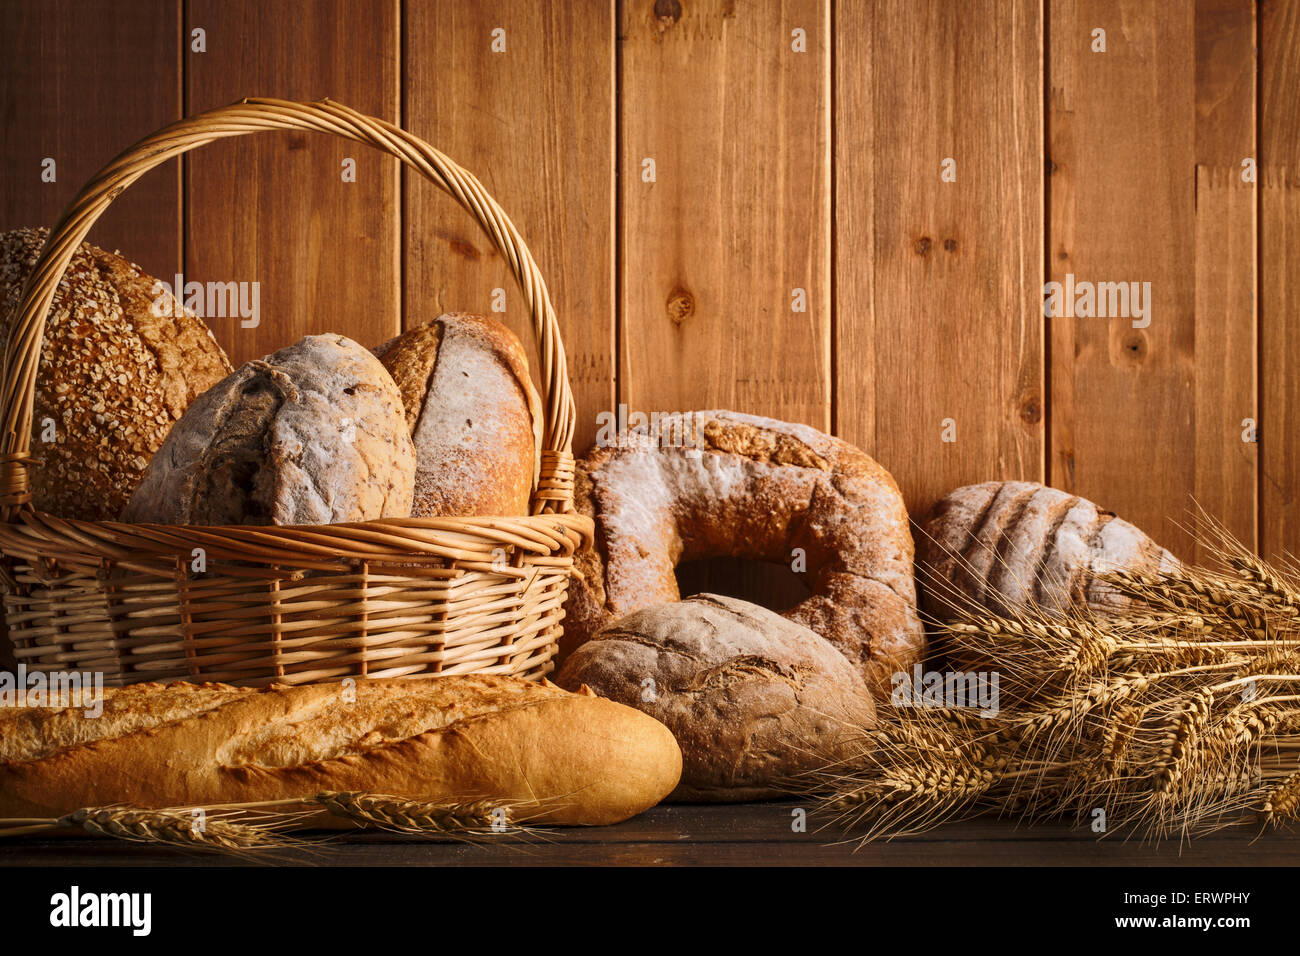 frisches Brot und Weizen auf den hölzernen Stockfoto